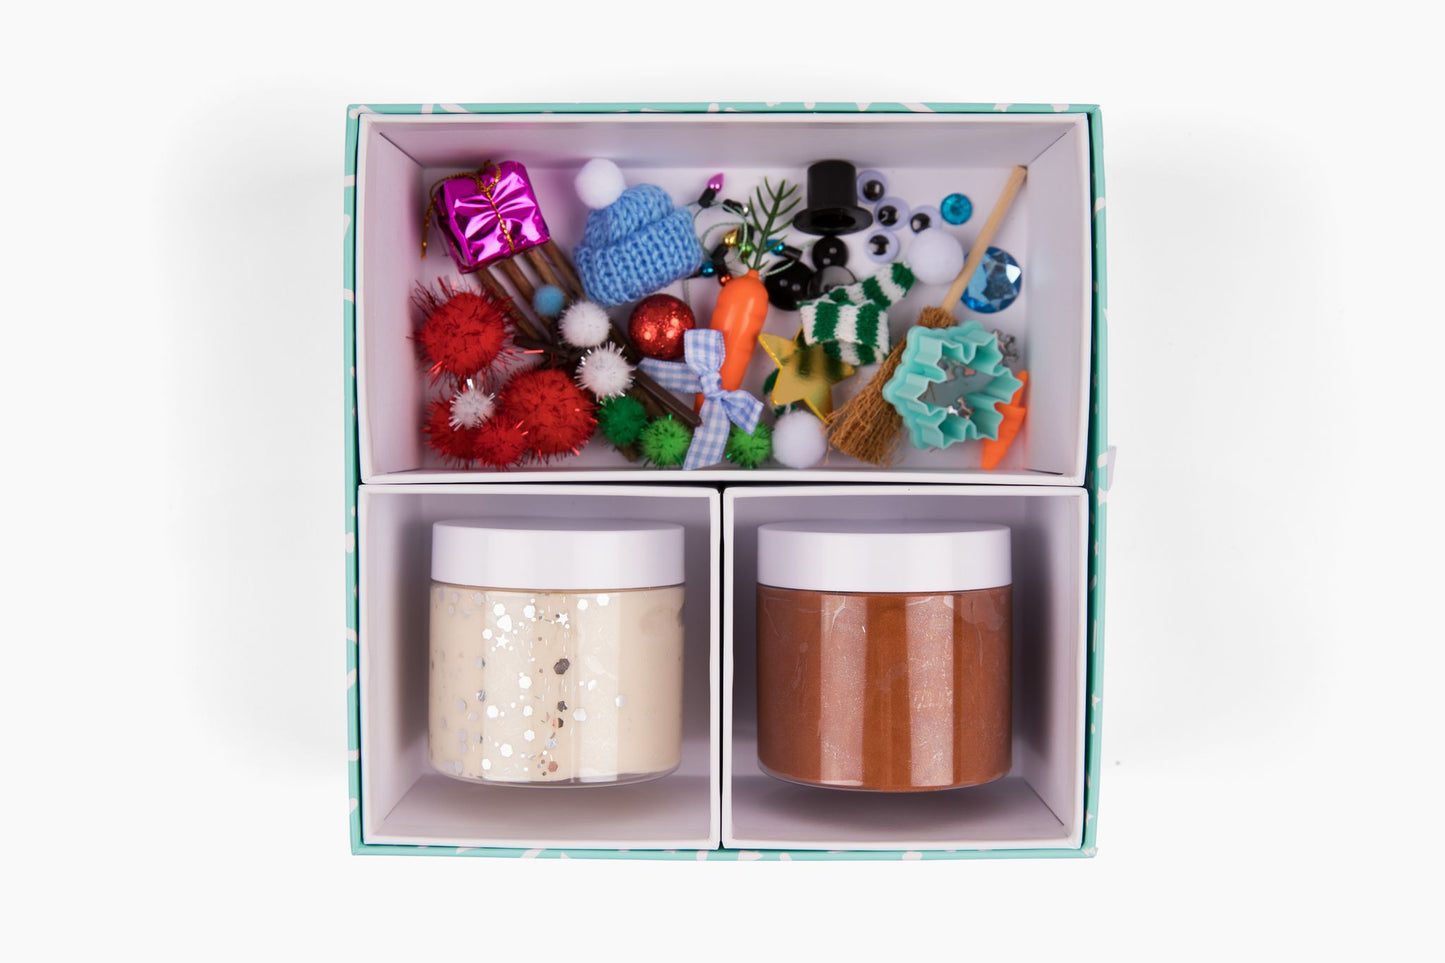 Build a Snowman + Reindeer Medium Gift Box